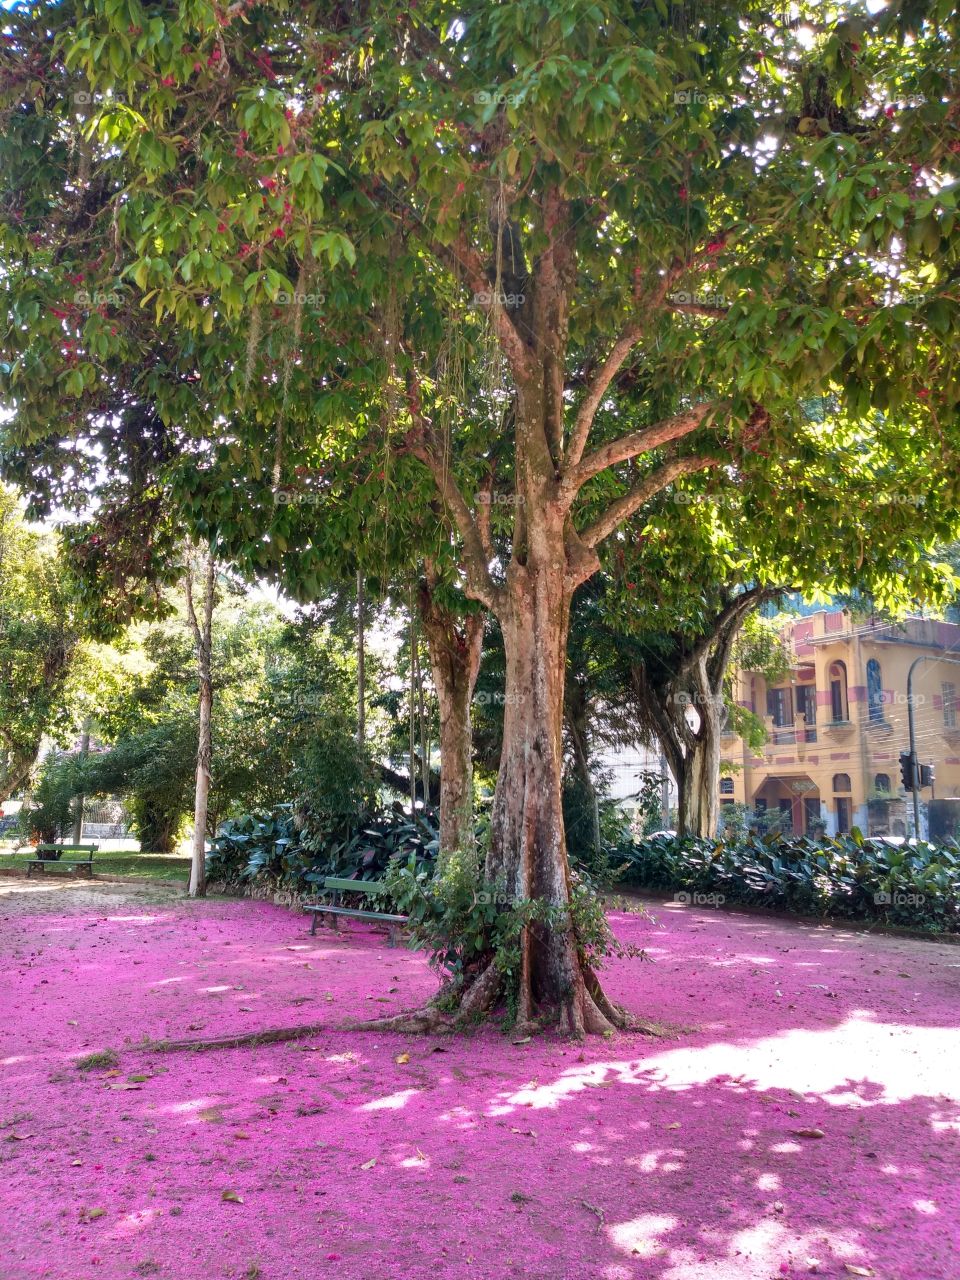 And the floor turned pink. Square in Alto da Boa Vista - Floresta da Tijuca - Rio de Janeiro.